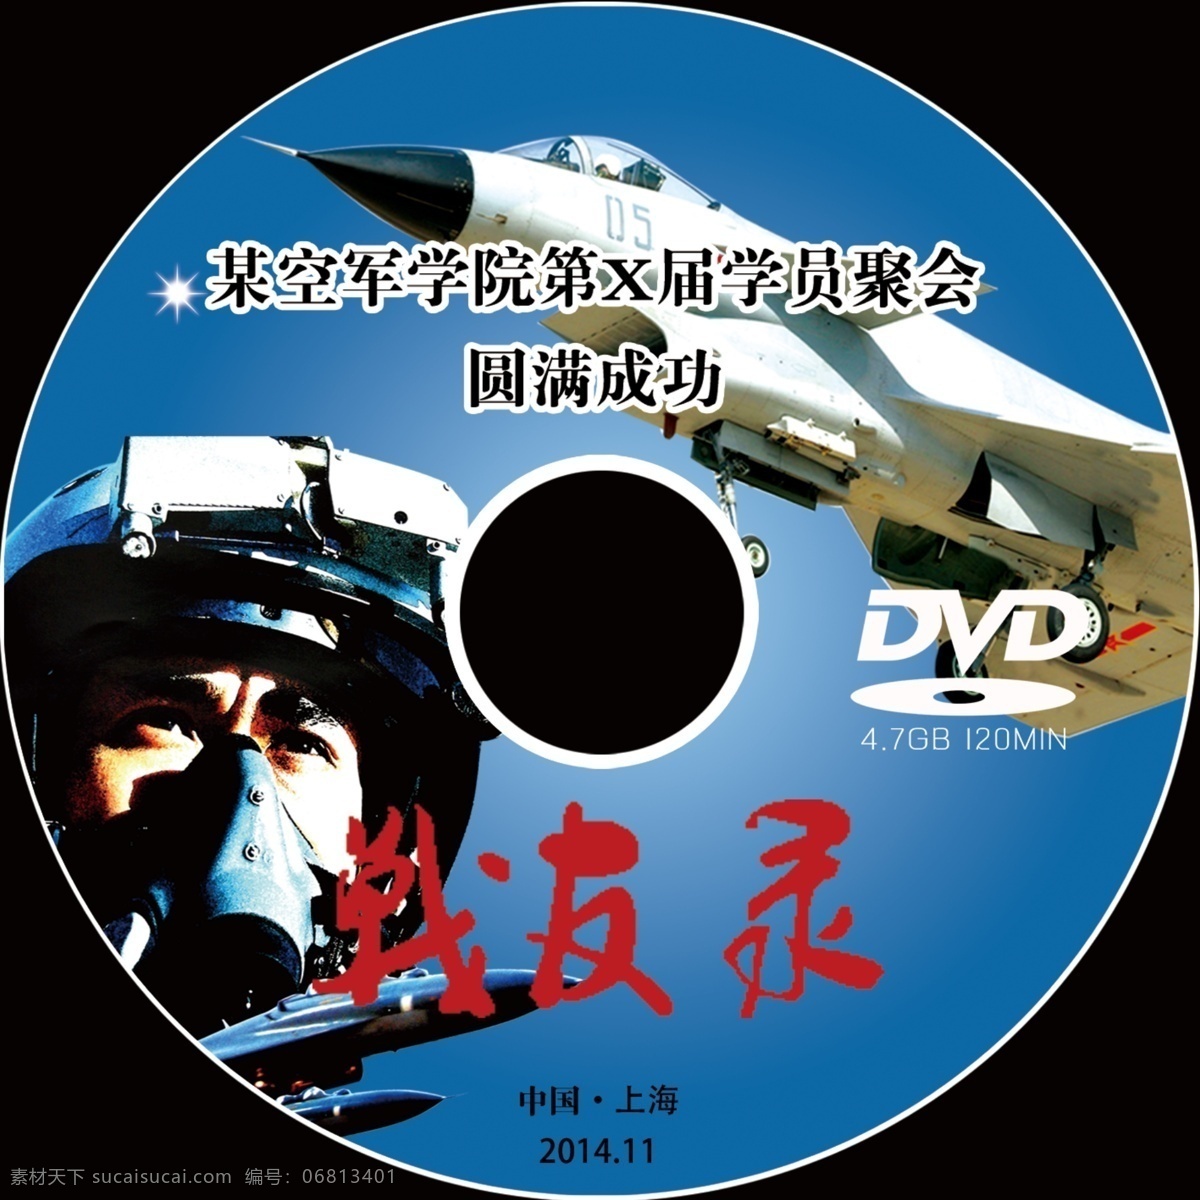 空军 学院 聚会 光碟 2015 dvd 背景 部队 飞机 飞行员 军人 战斗机 战友录 元旦 新年 原创设计 其他原创设计